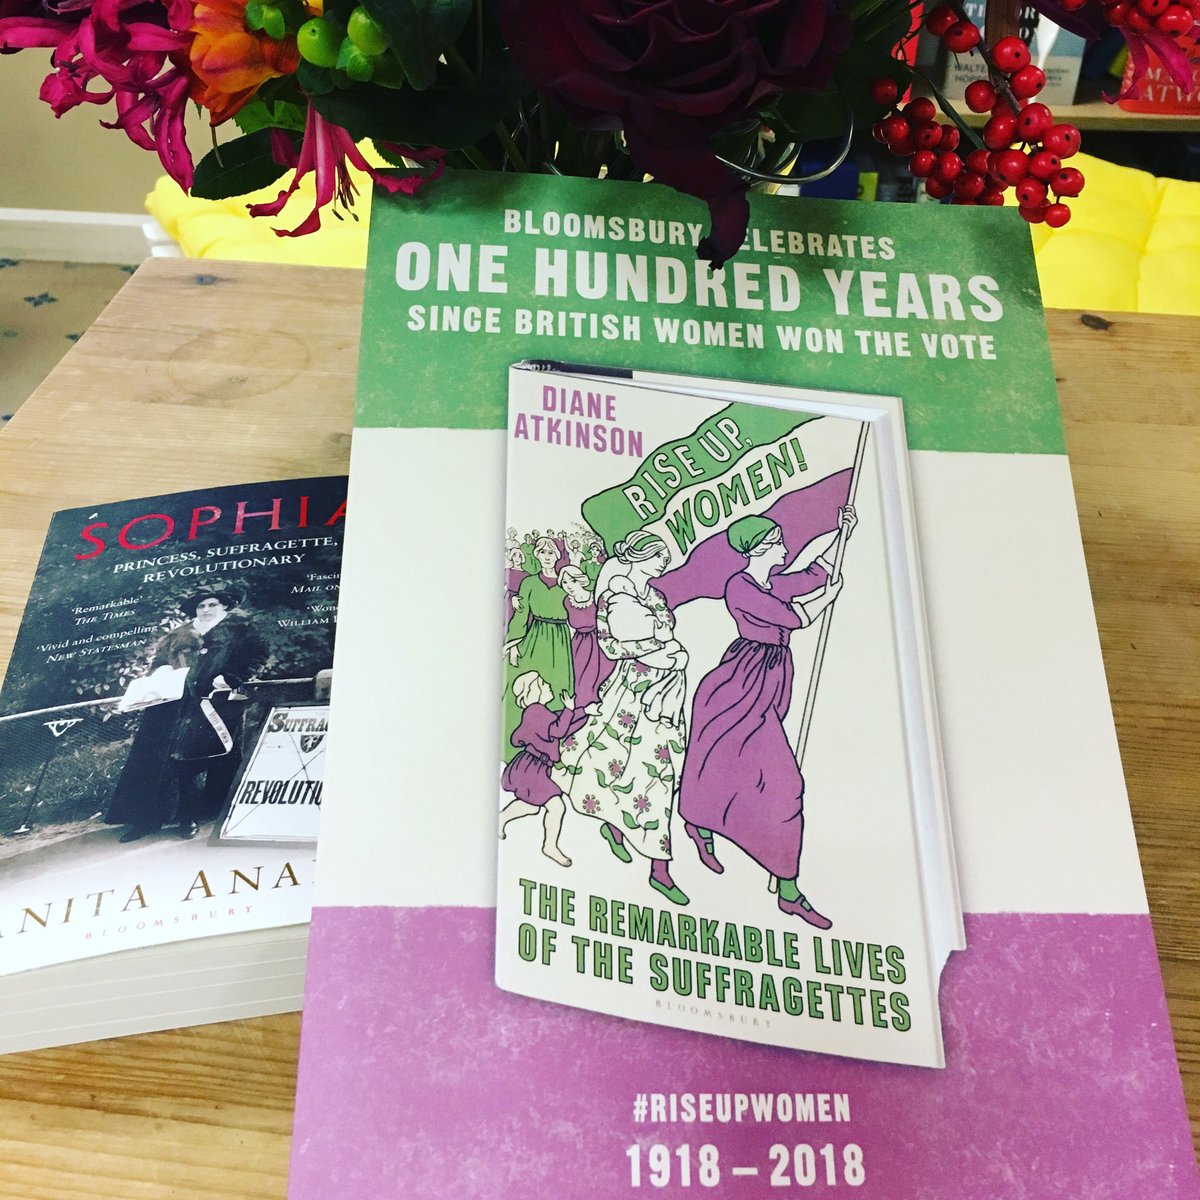 We will be celebrating all year @BloomsburyBooks #women’svote #RiseUpWomen! @DitheDauntless #Sophia @tweeter_anita #SylviaPankhurst @RachelHolmes